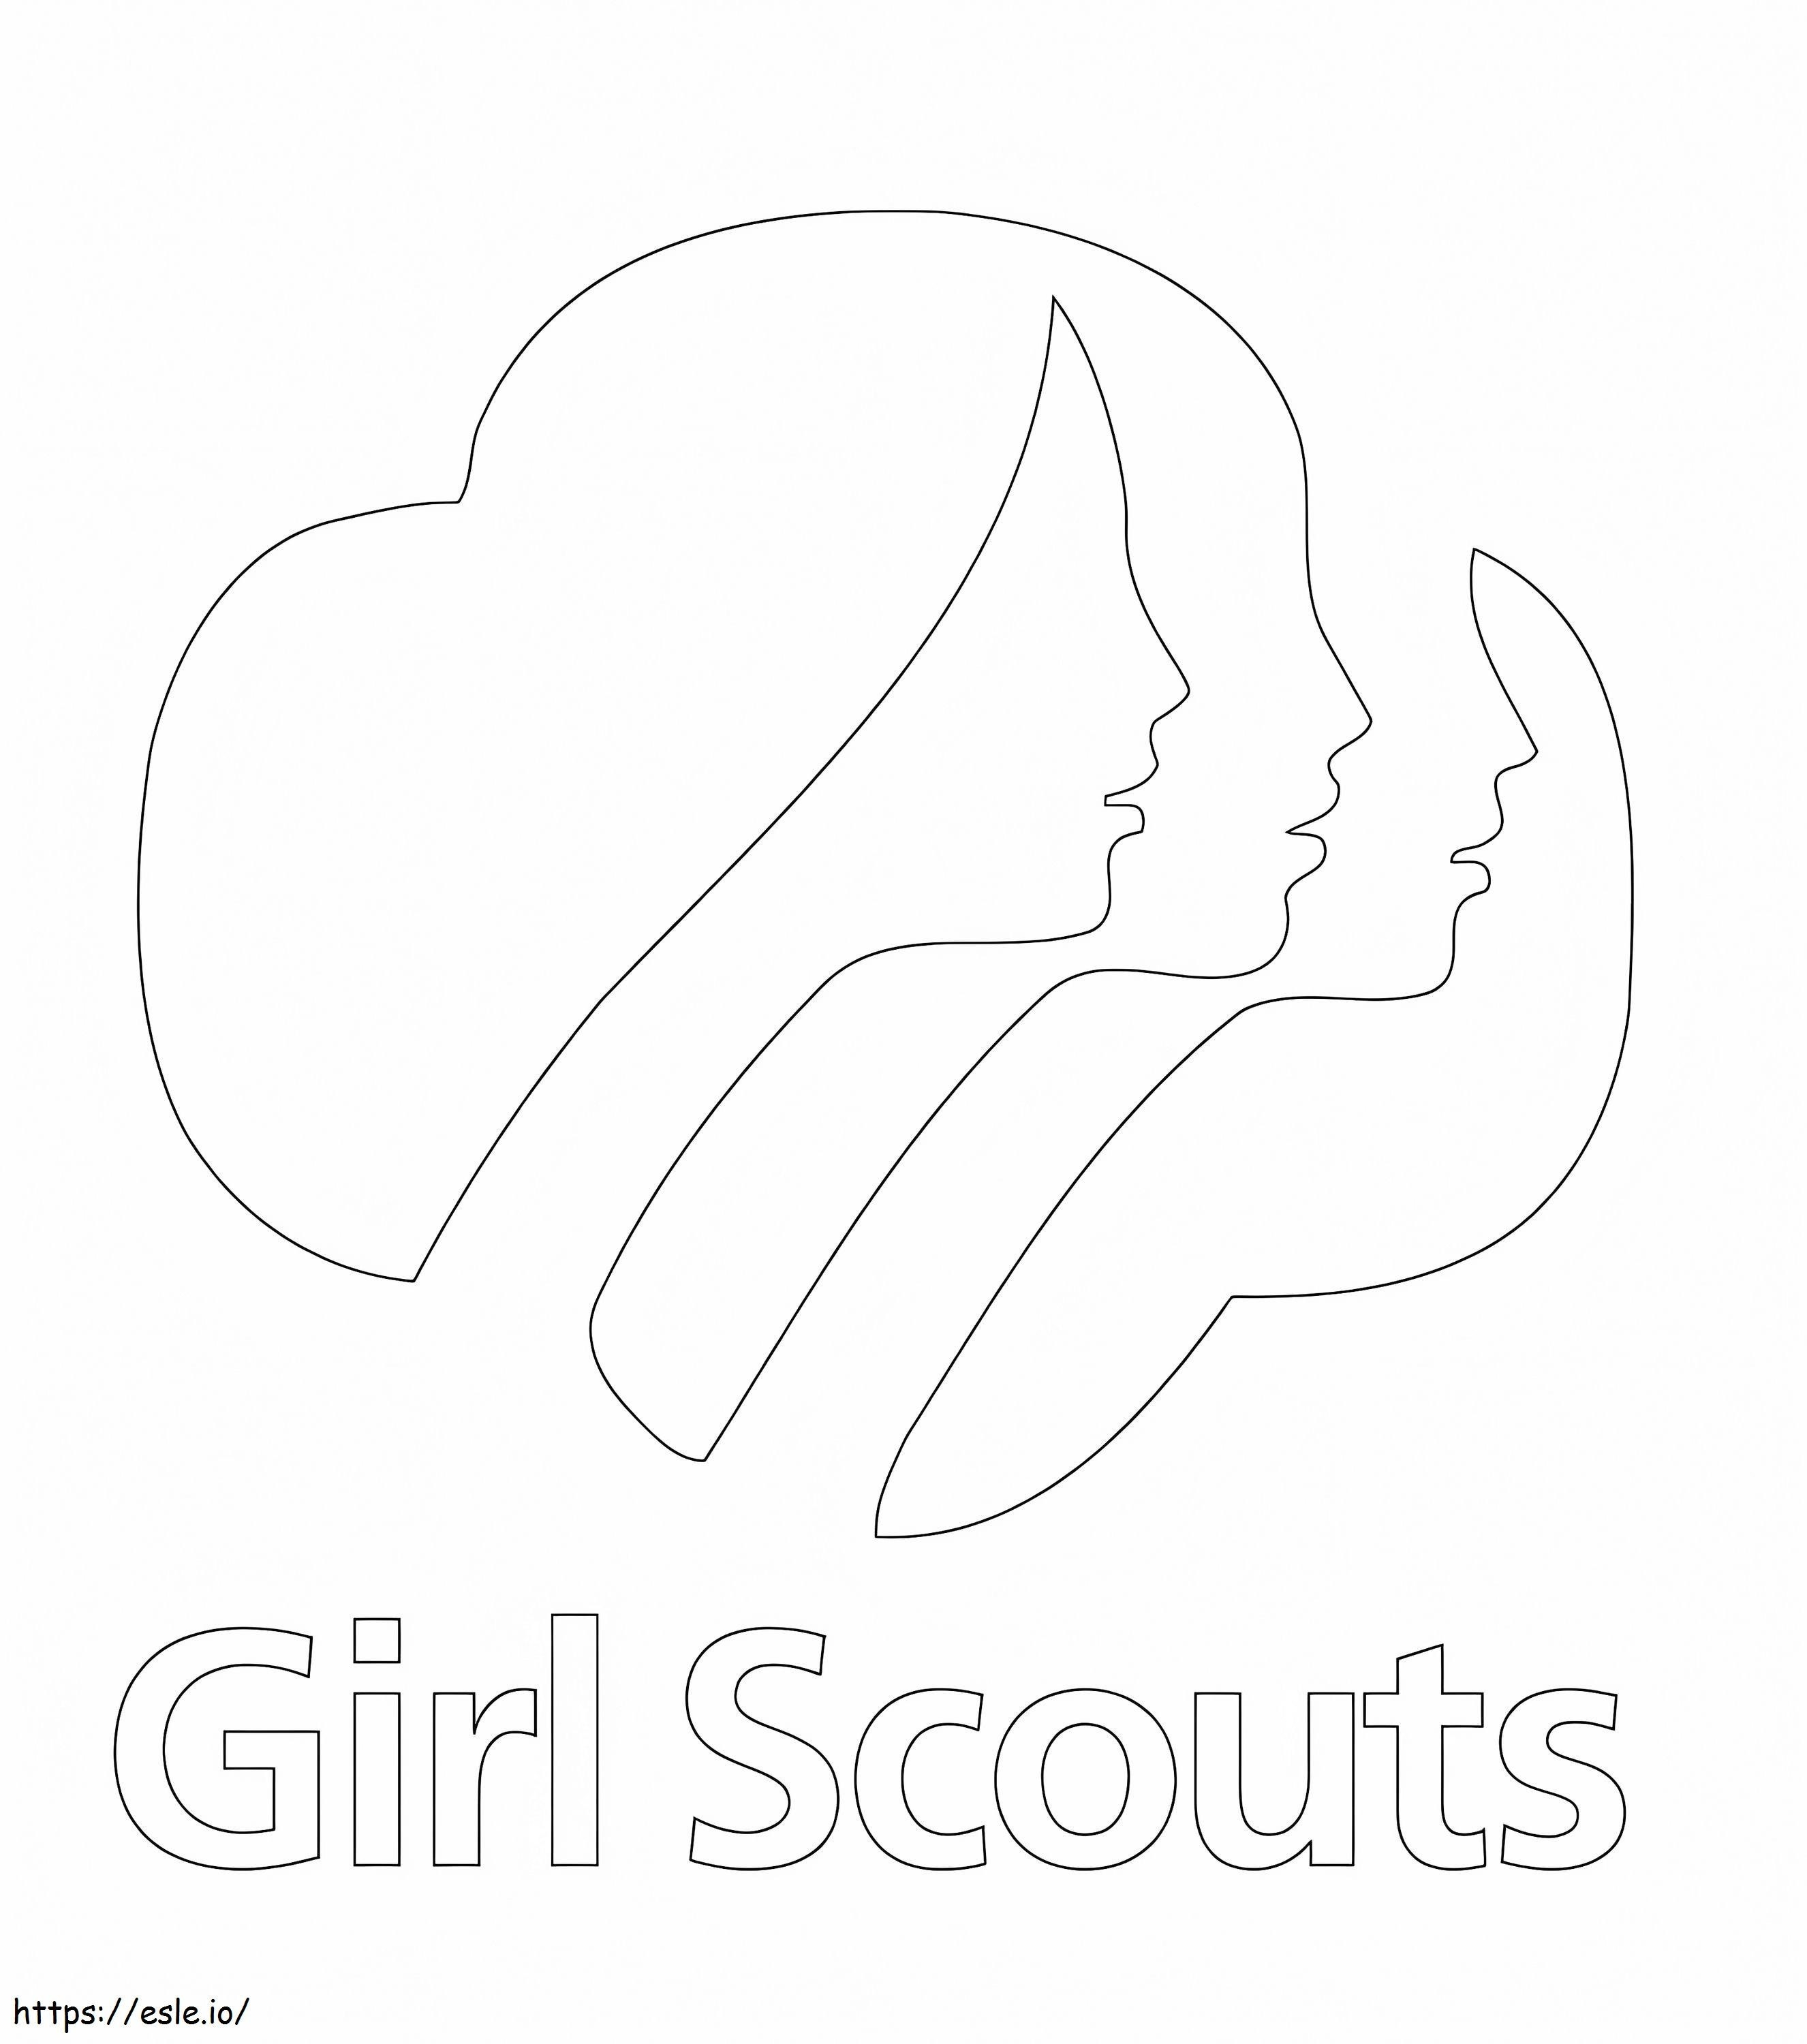 Girl Scouts-logo kleurplaat kleurplaat